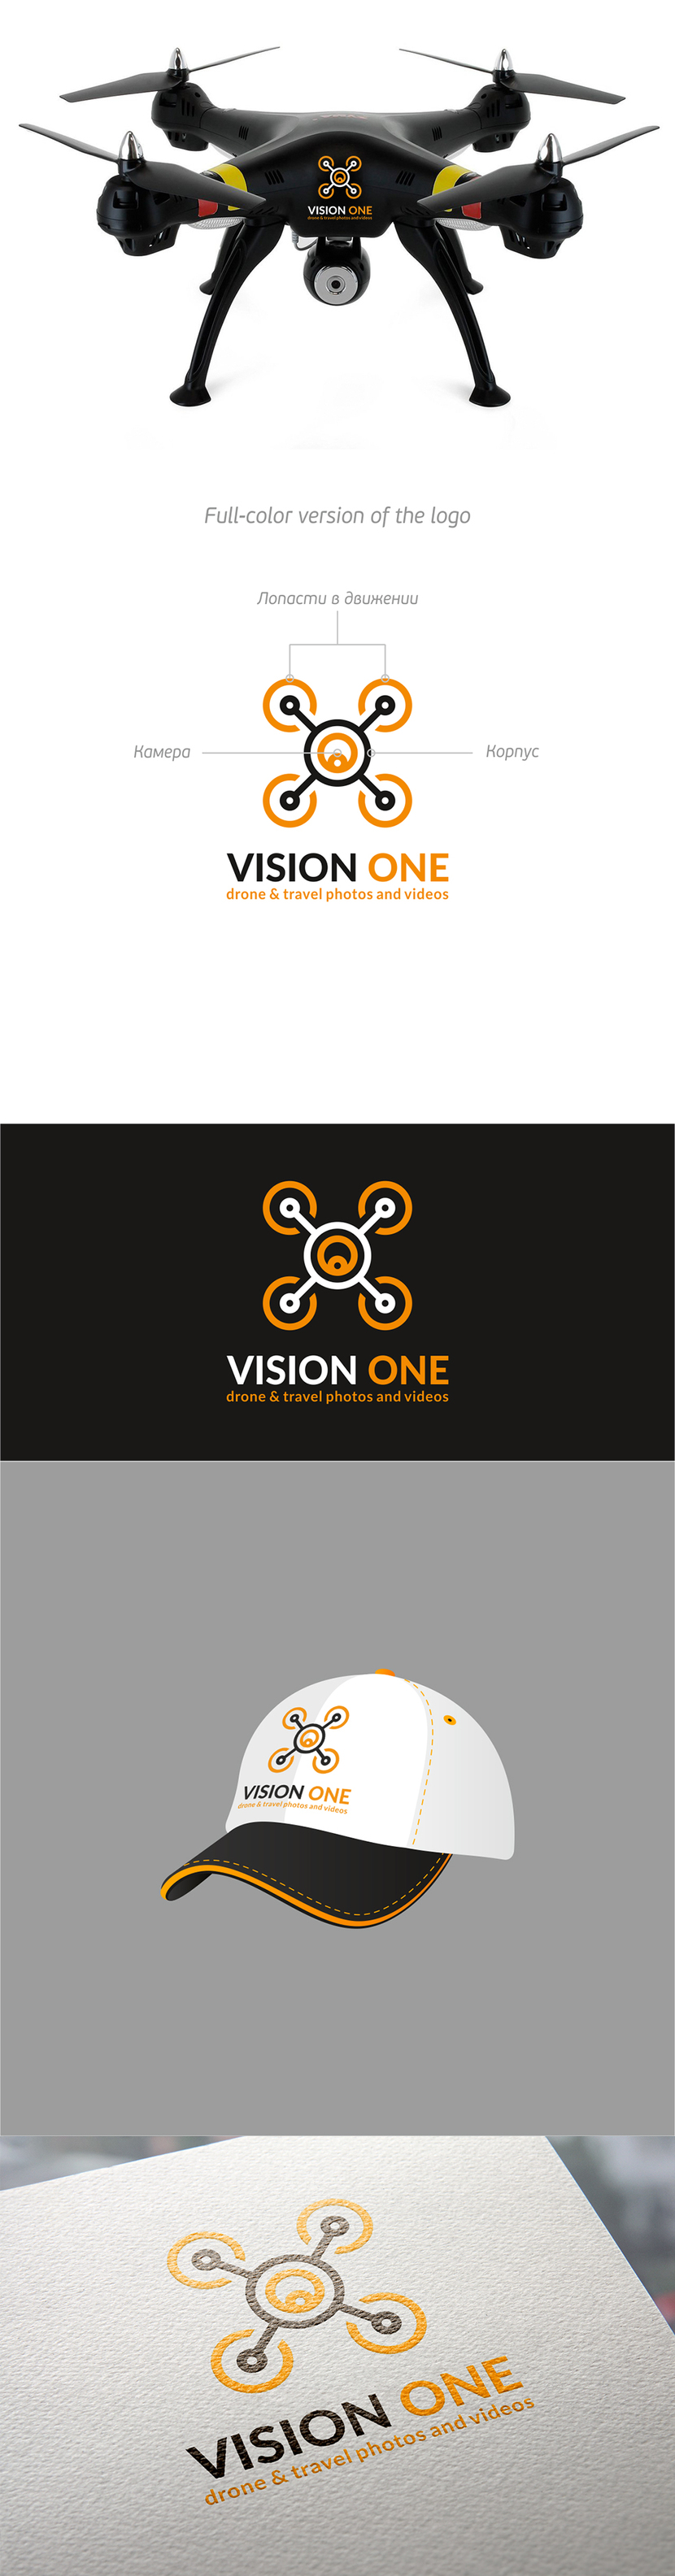 + возможно так) - Разработка фирменного стиля проекта Vision One